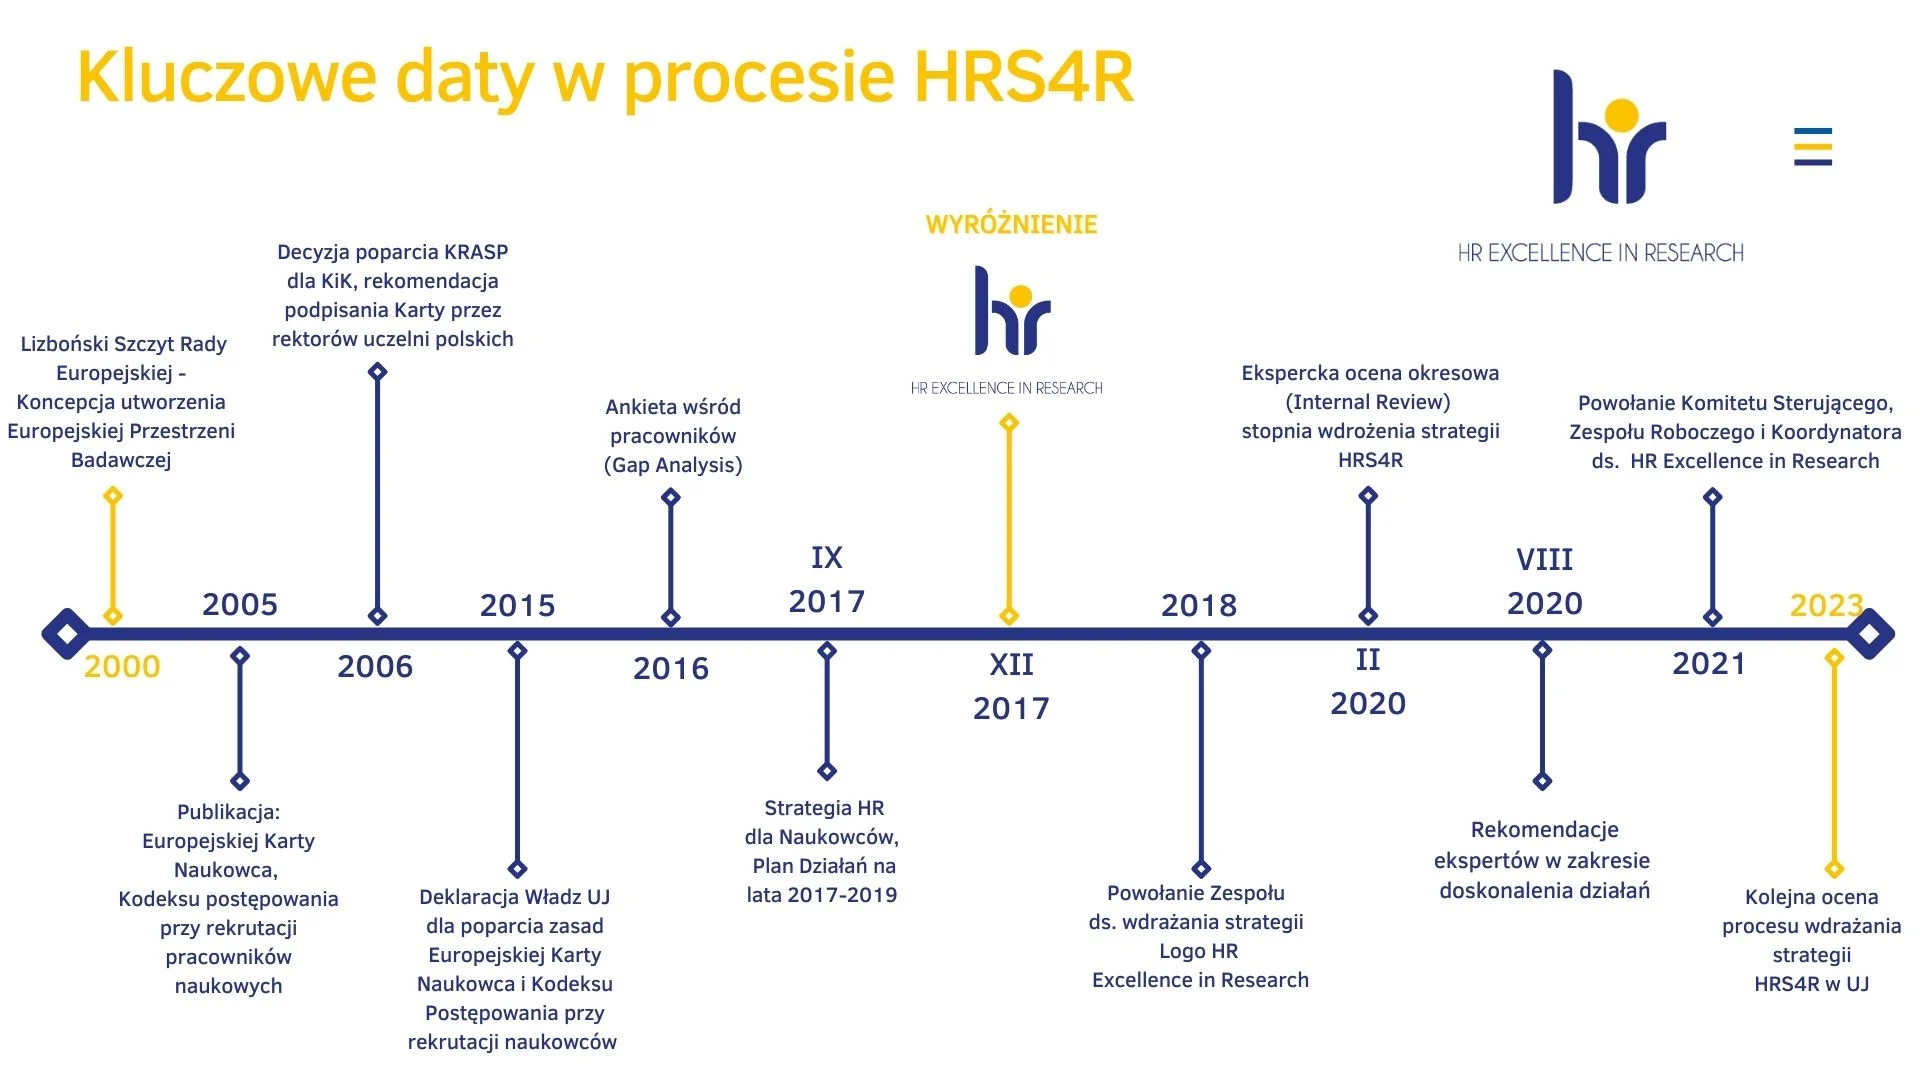 Kluczowe daty w procesie HRS4R